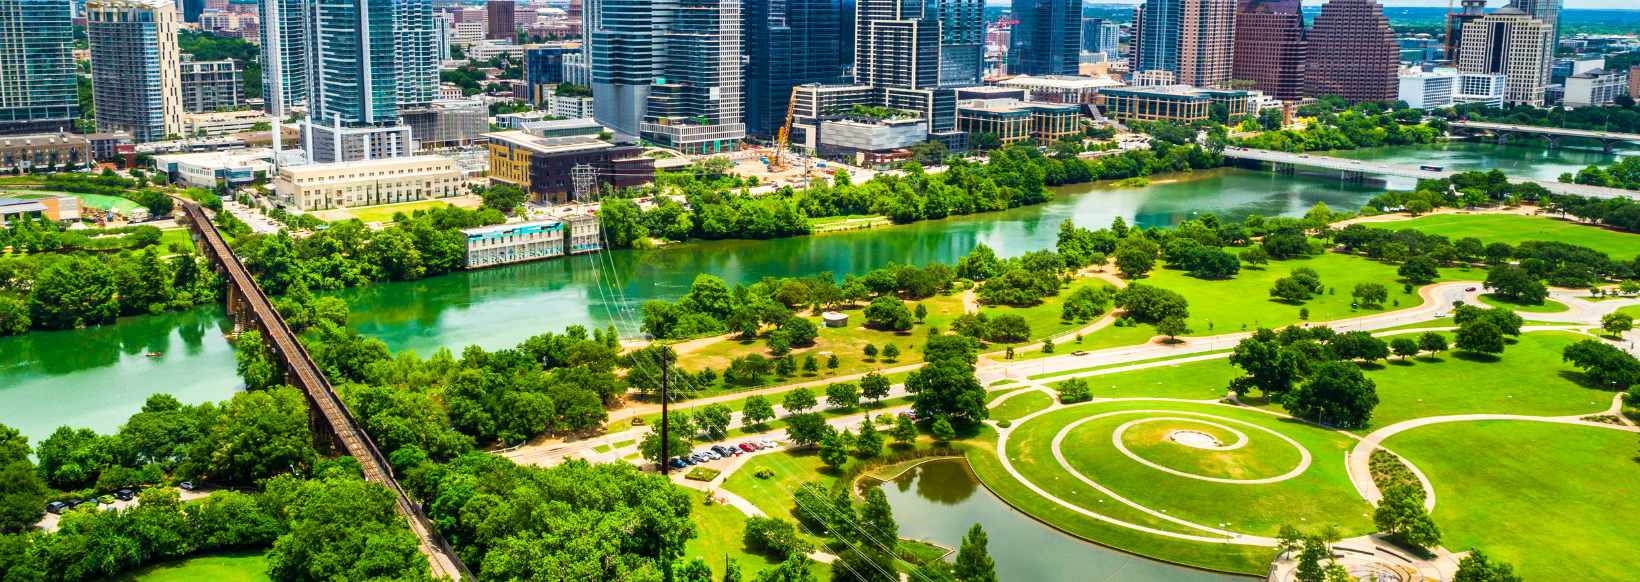 Austin skyline with park